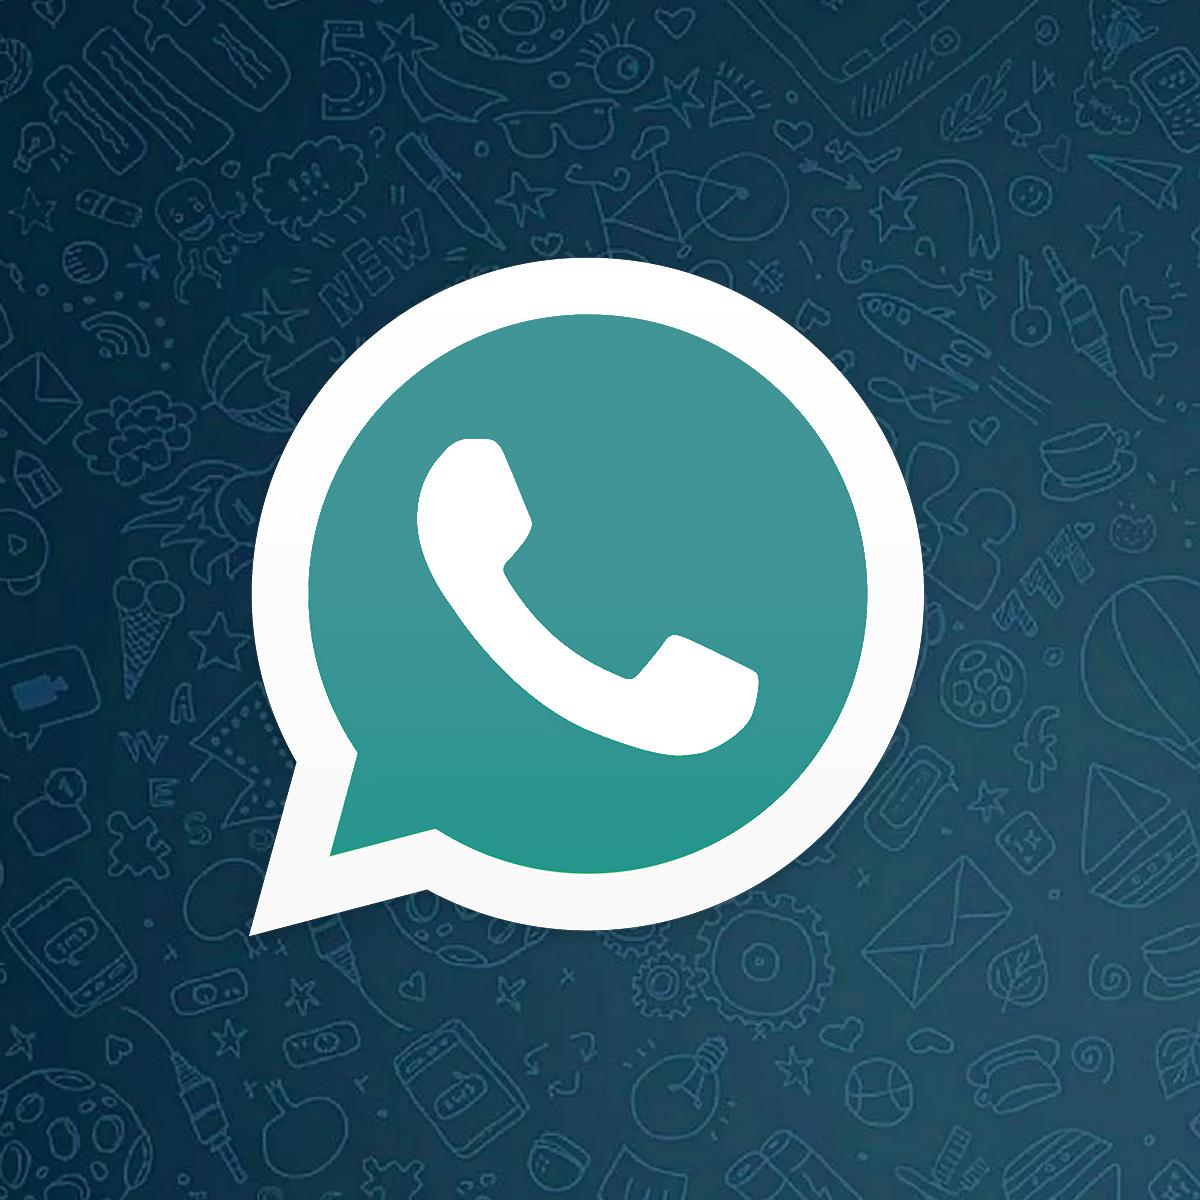 Descargar WhatsApp Plus V50.30: última versión del APK de noviembre 2023, DATA